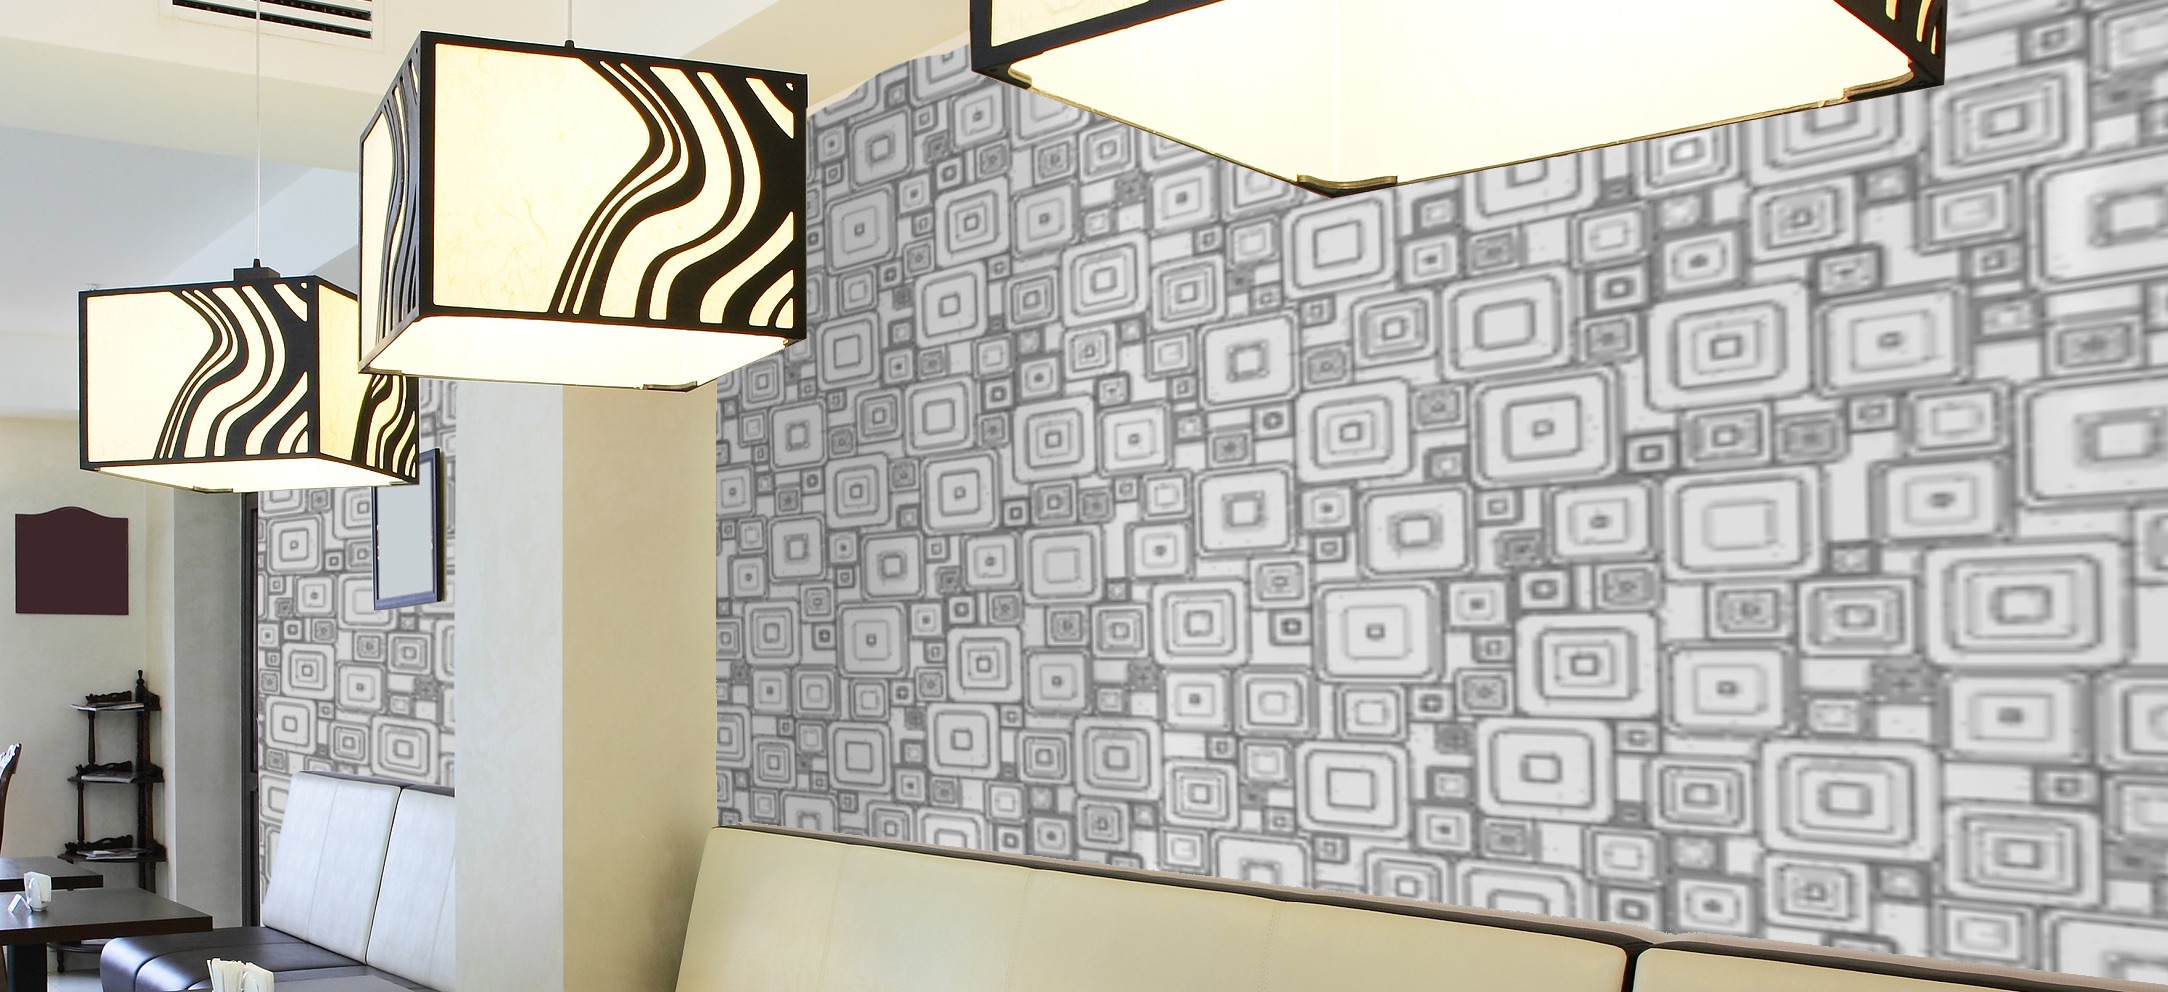 Commercial wallpaper - Commercial Wallpaper Installation